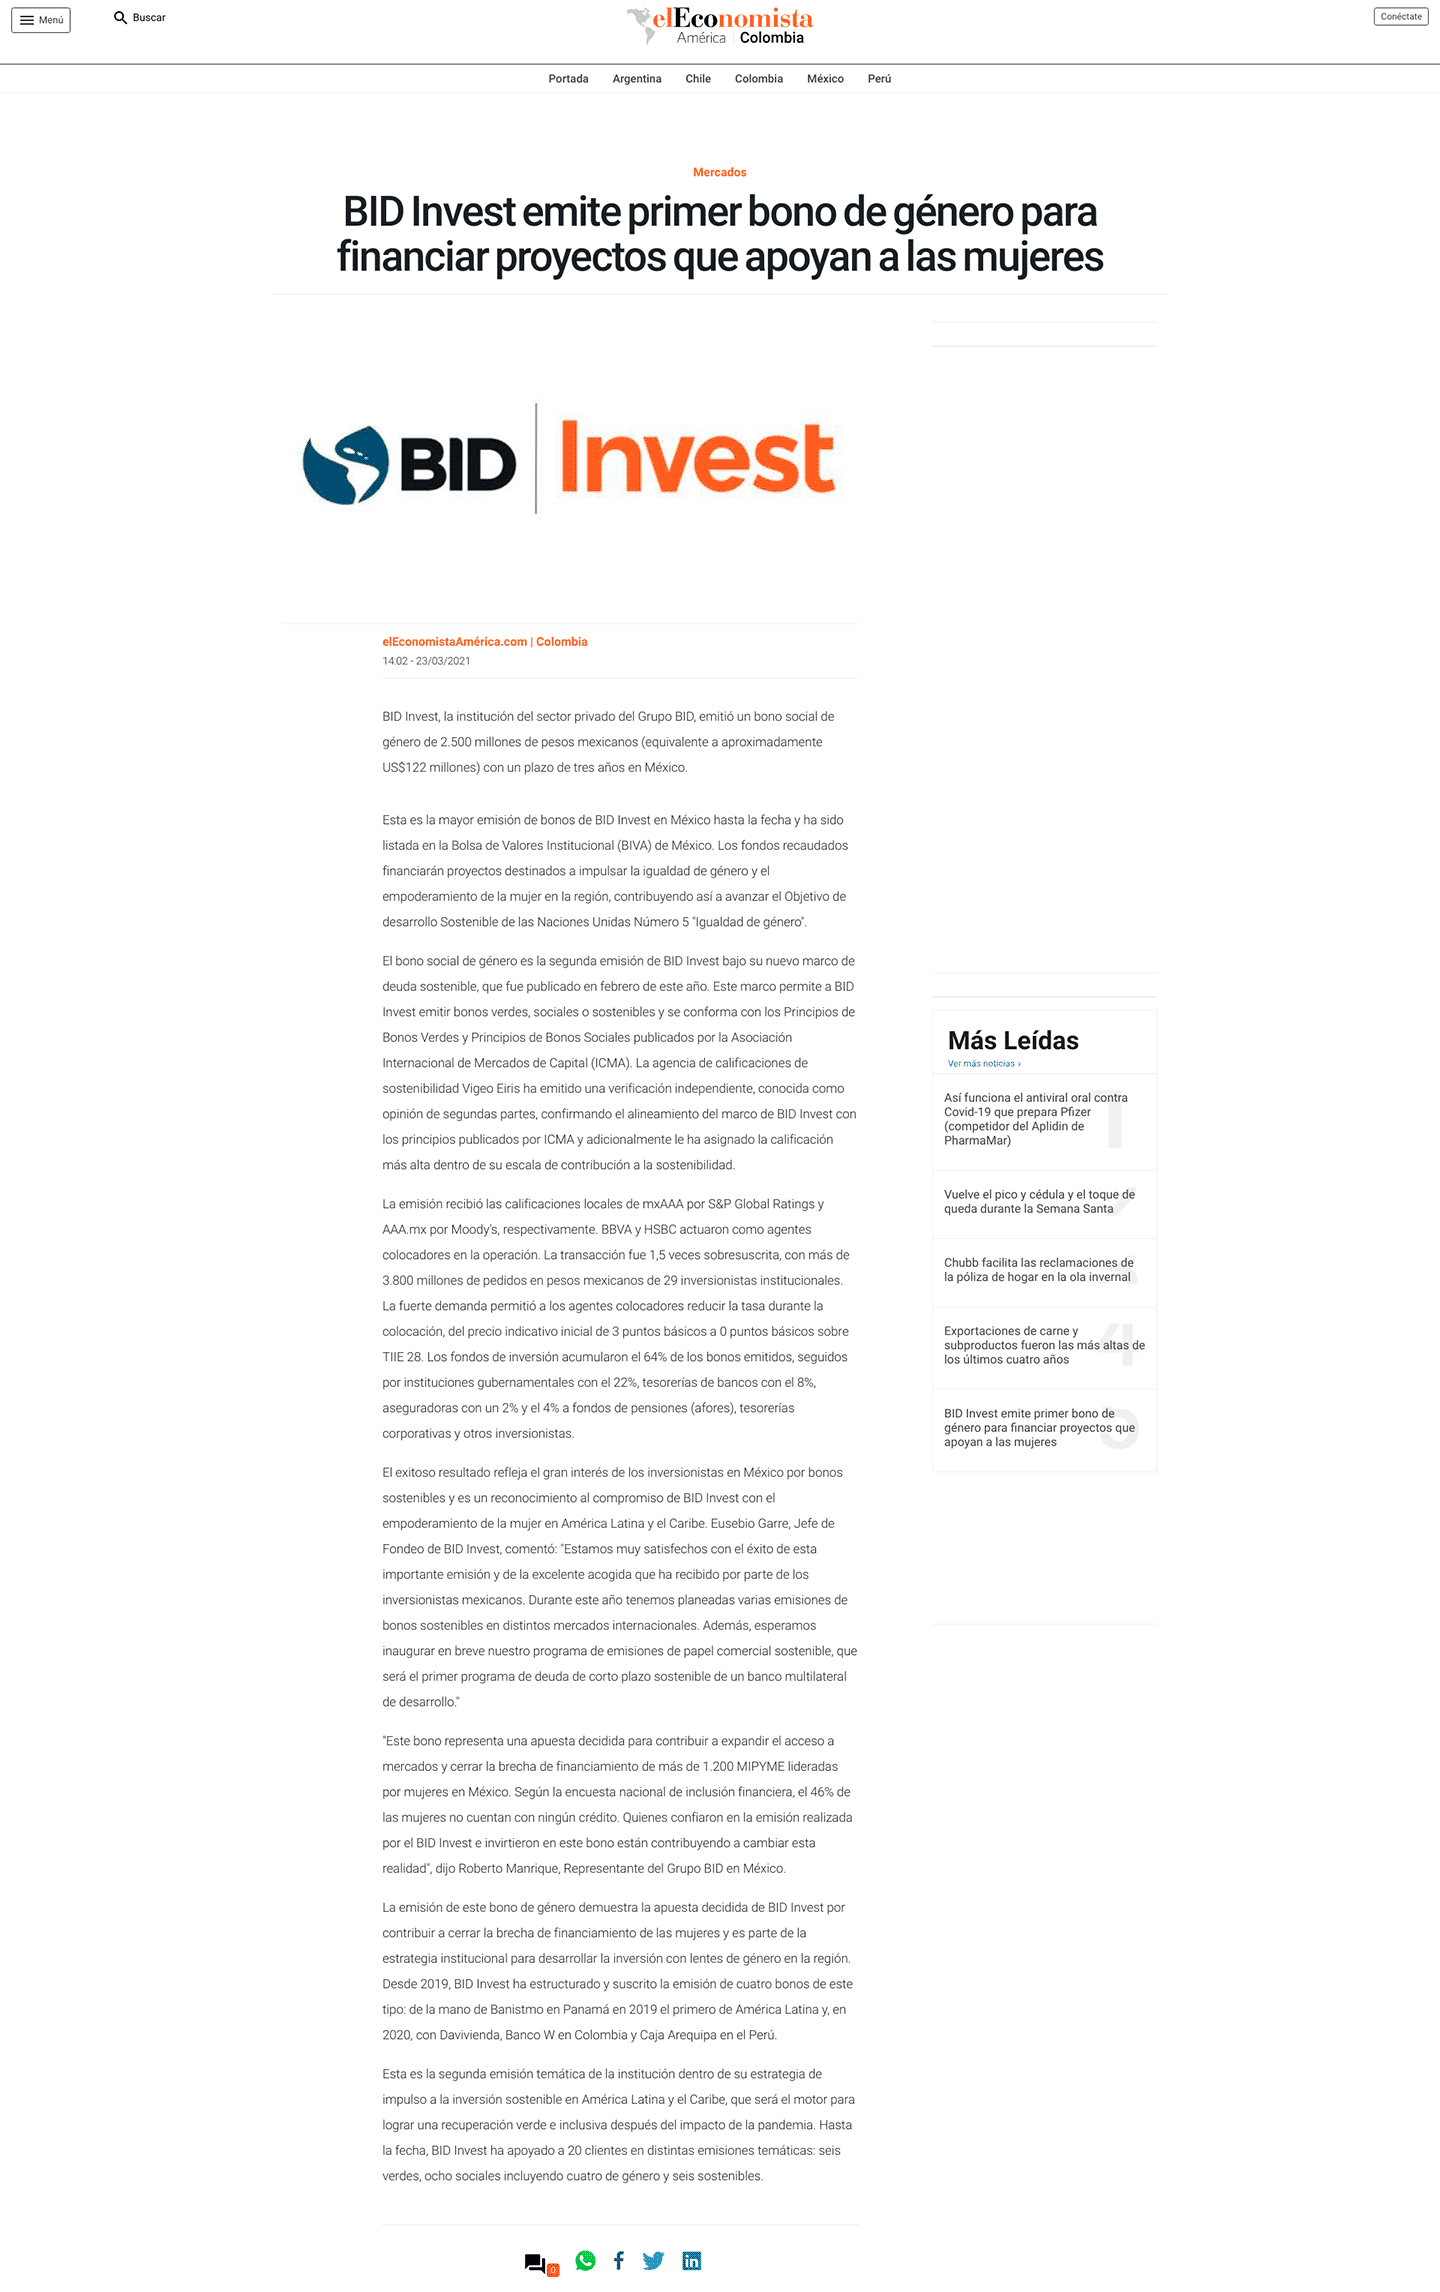 BID Invest emite primer bono de género para financiar proyectos que apoyan a las mujeres.